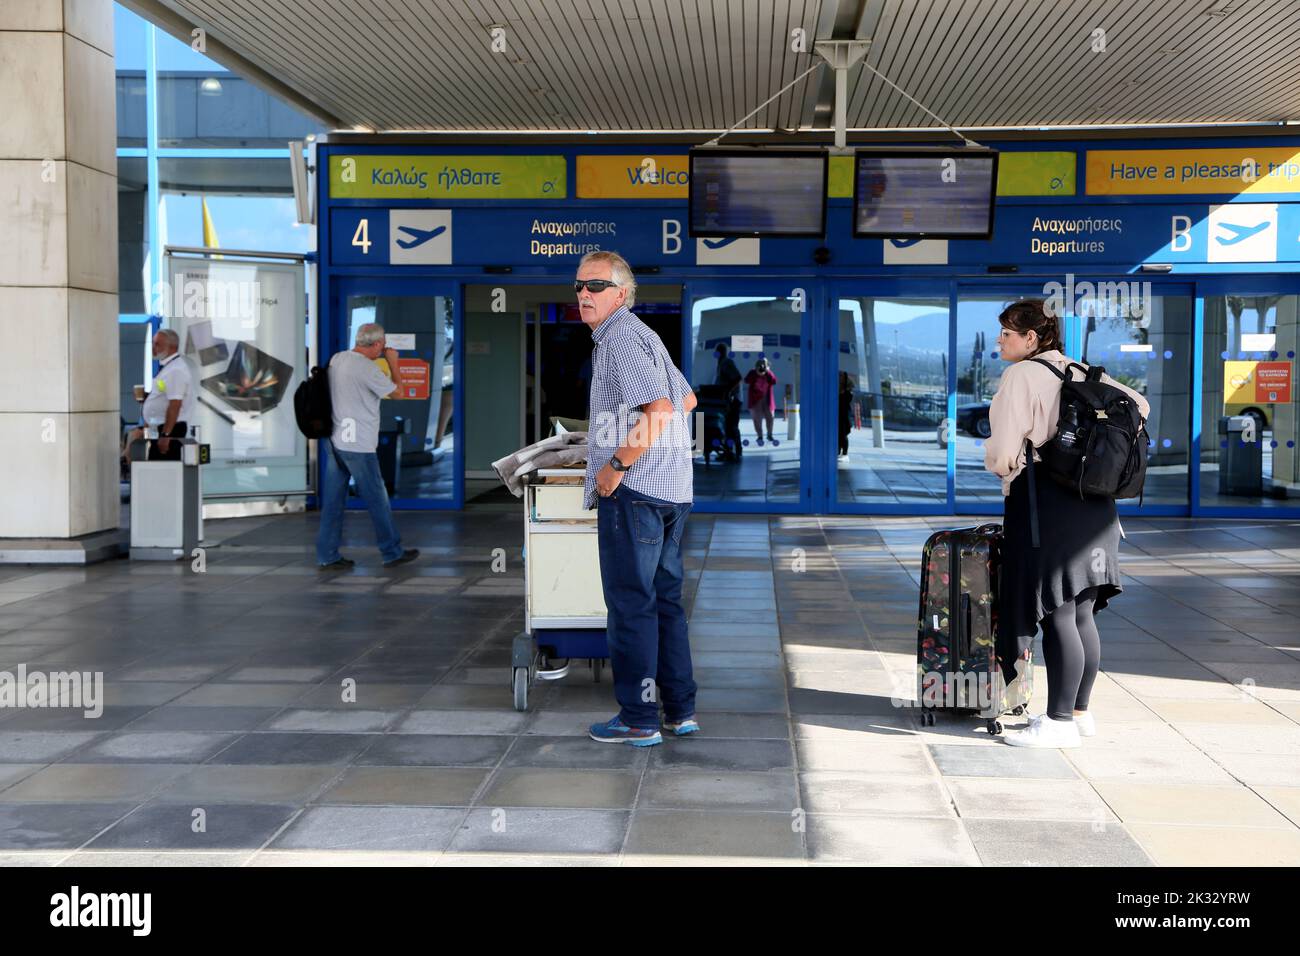 Aéroport international d'Athènes Eleftherios Venizelos Grèce touristes à l'entrée de départ Banque D'Images